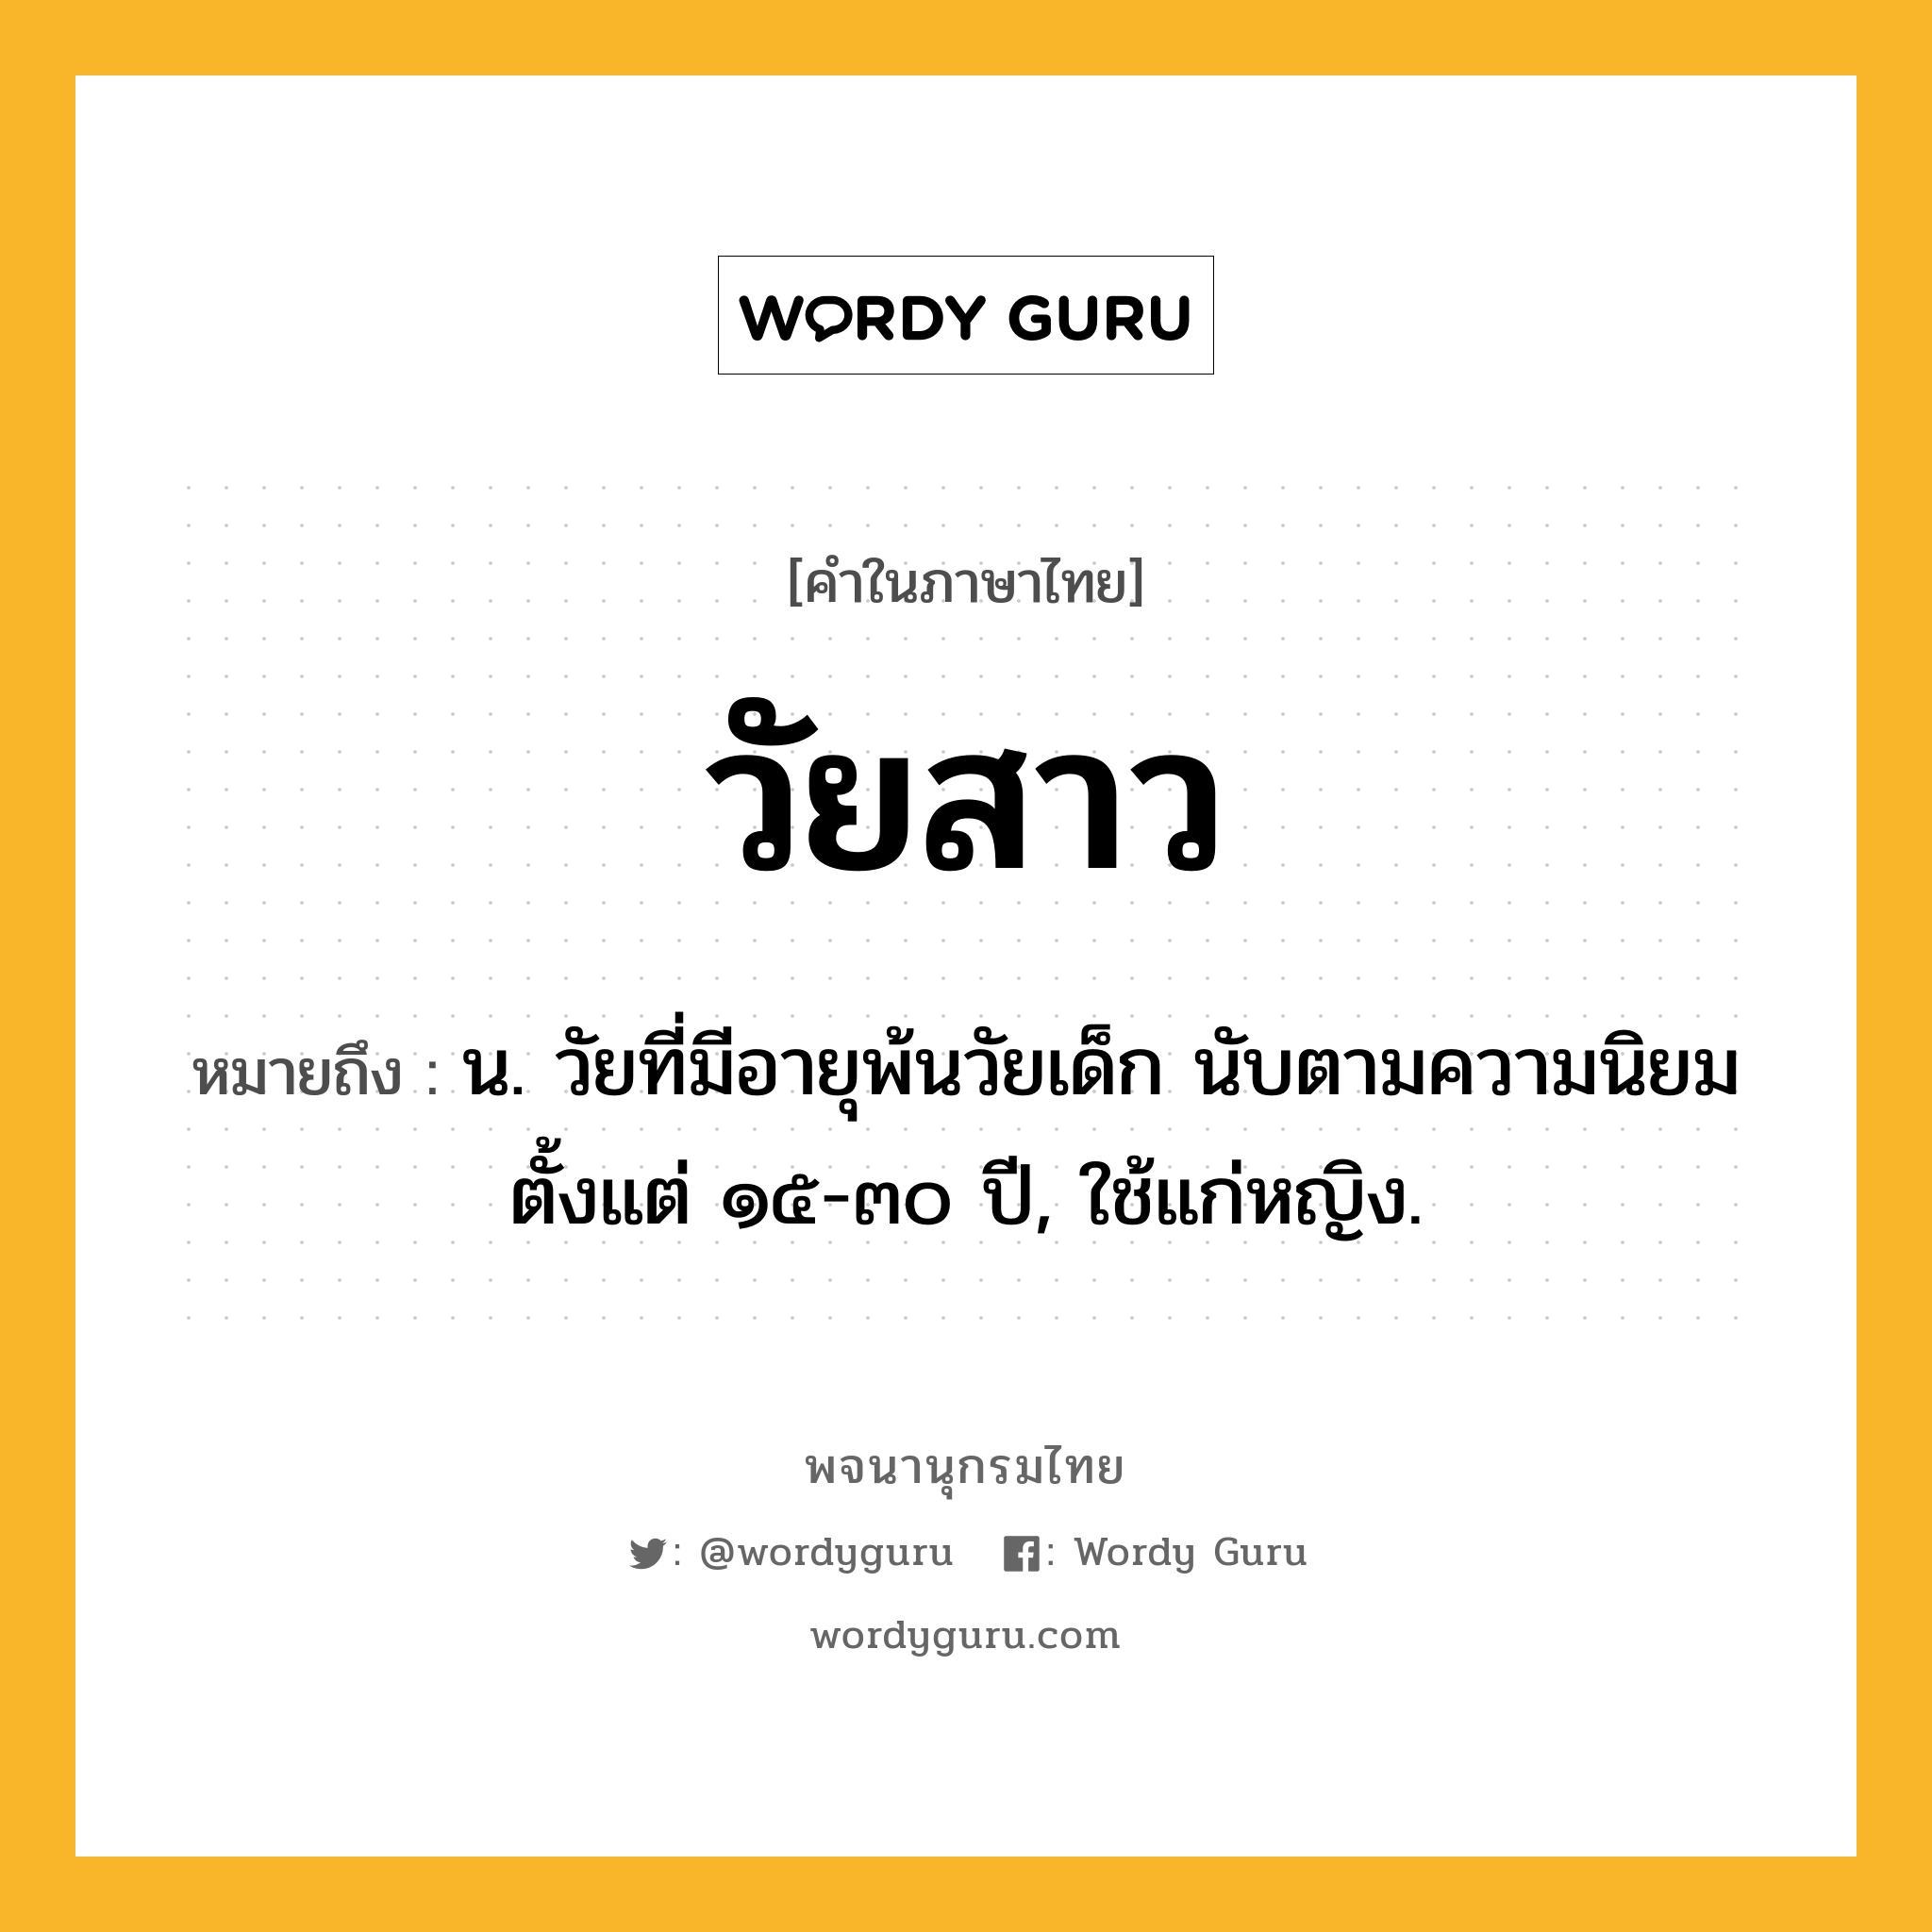 วัยสาว ความหมาย หมายถึงอะไร?, คำในภาษาไทย วัยสาว หมายถึง น. วัยที่มีอายุพ้นวัยเด็ก นับตามความนิยมตั้งแต่ ๑๕-๓๐ ปี, ใช้แก่หญิง.